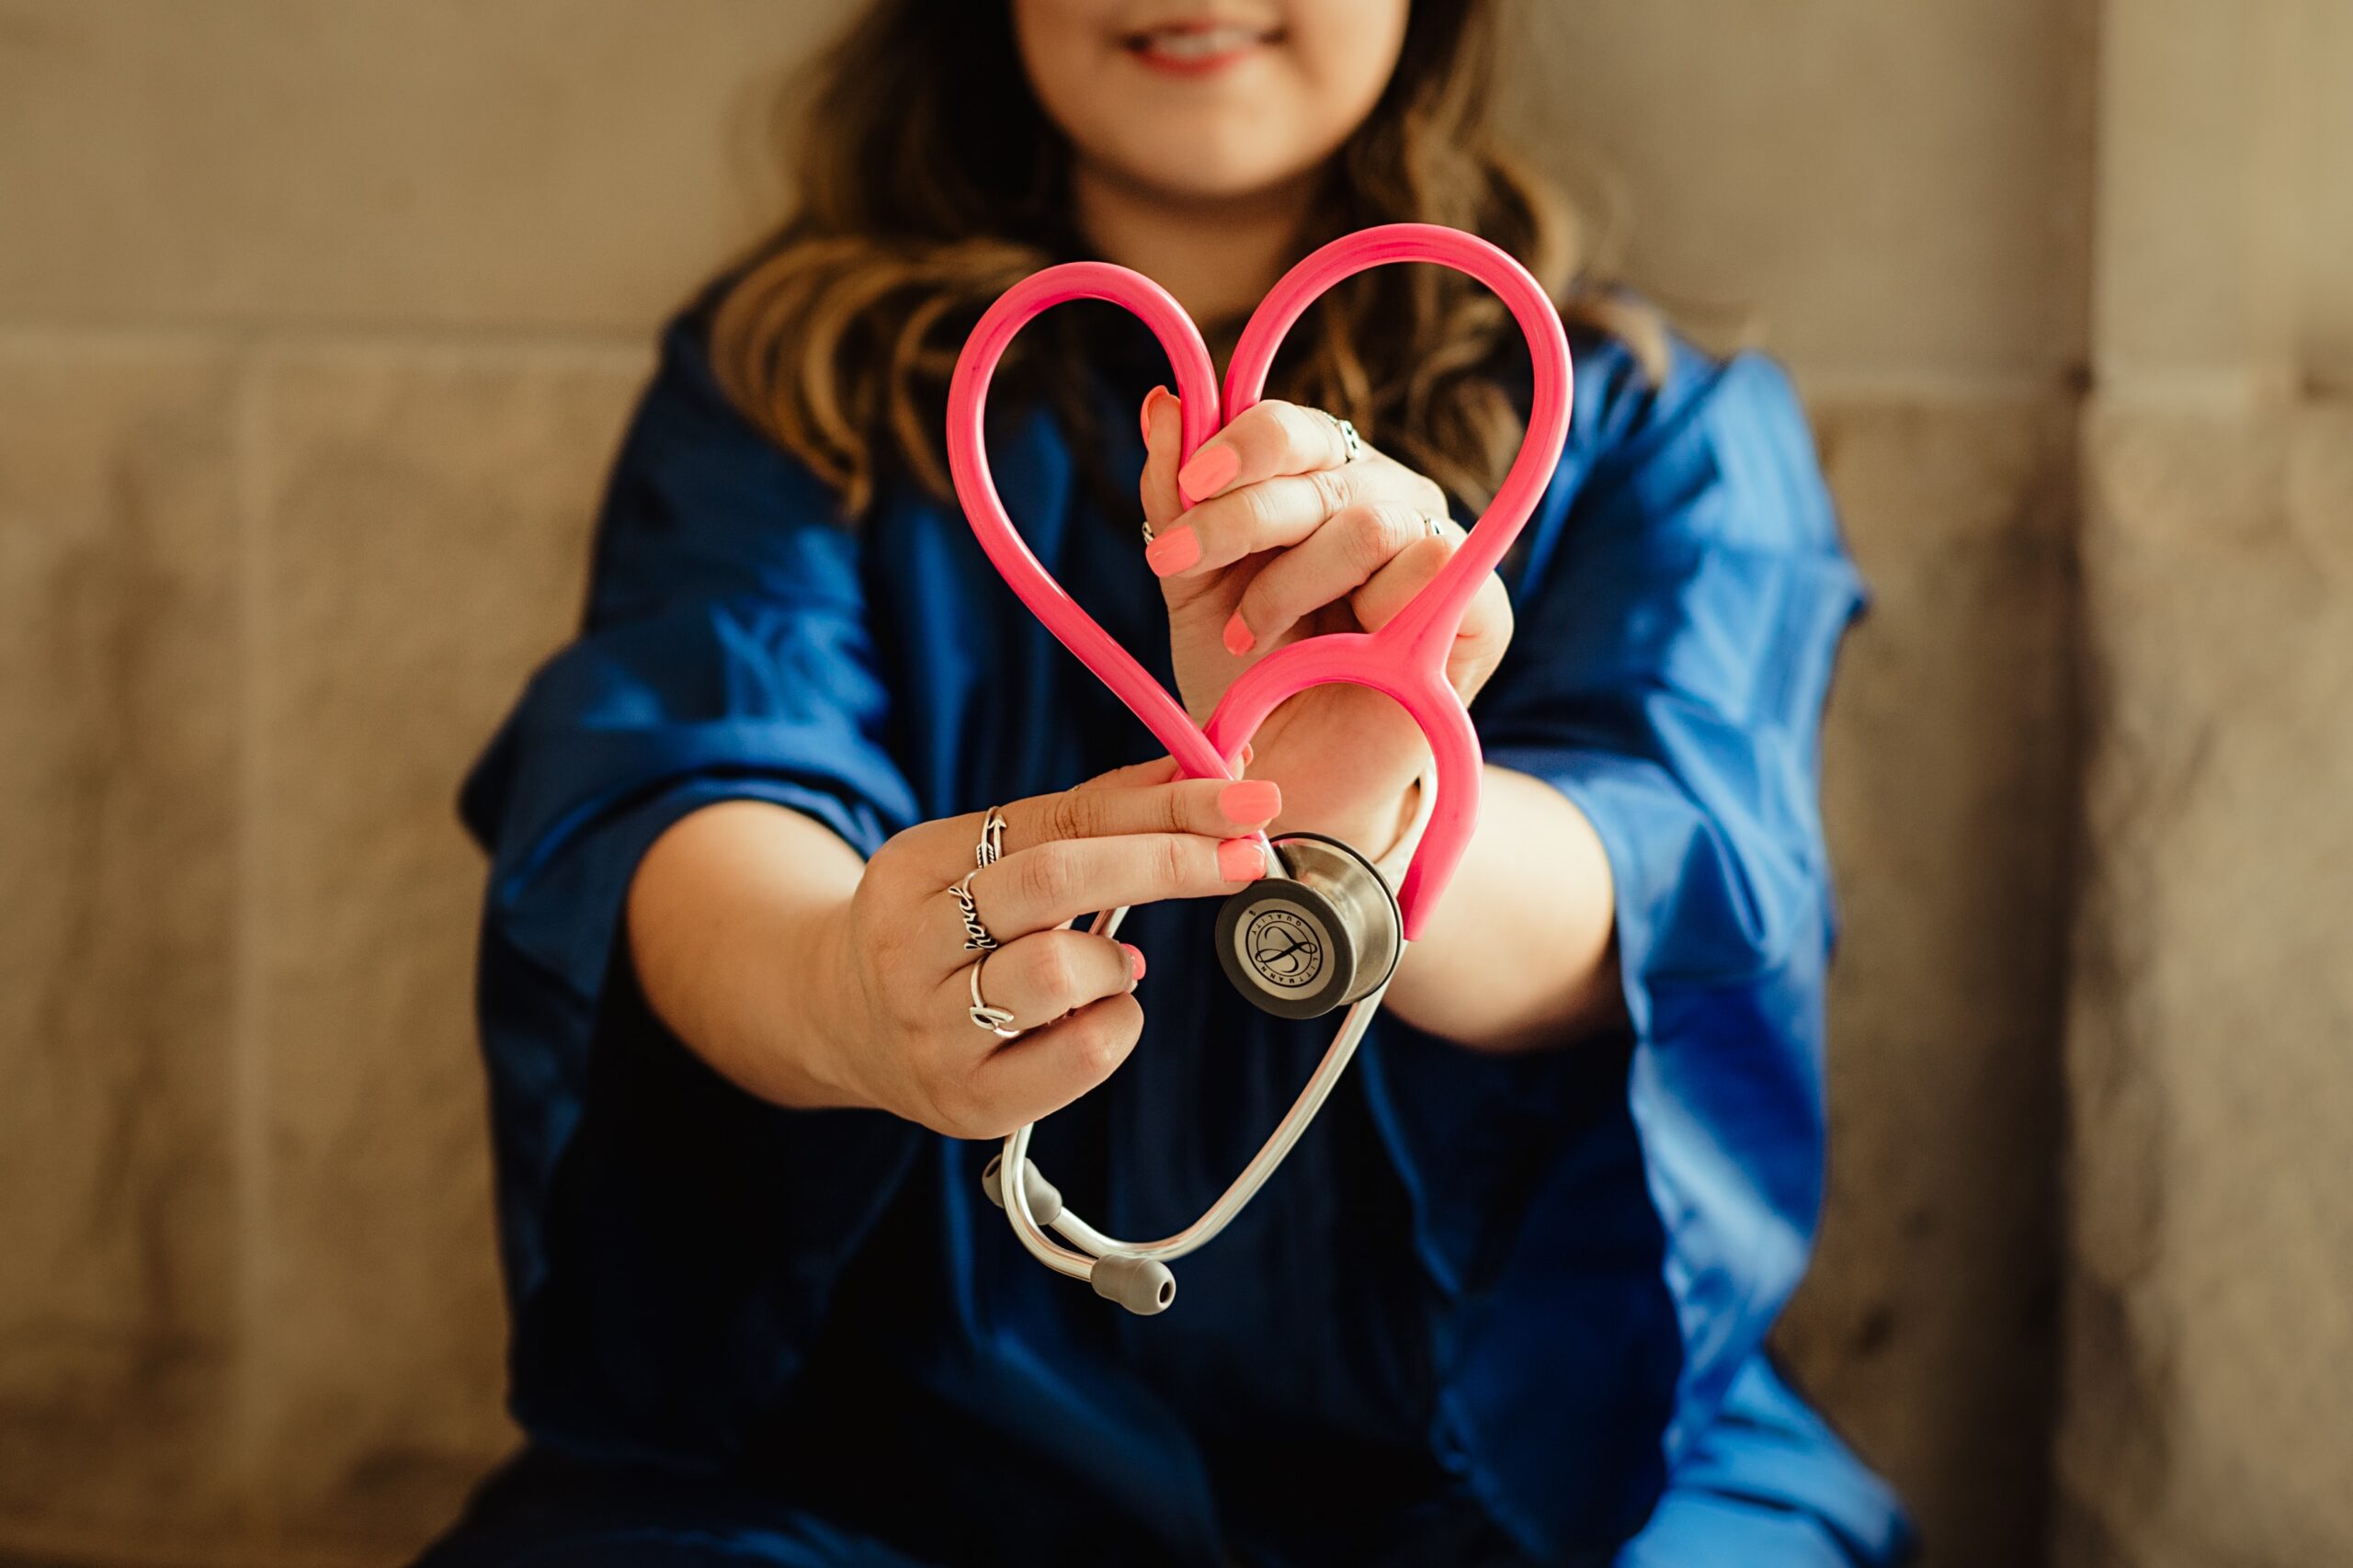 Foto von einer Person, die ein Stethoskop hält und daraus ein Herz formt.